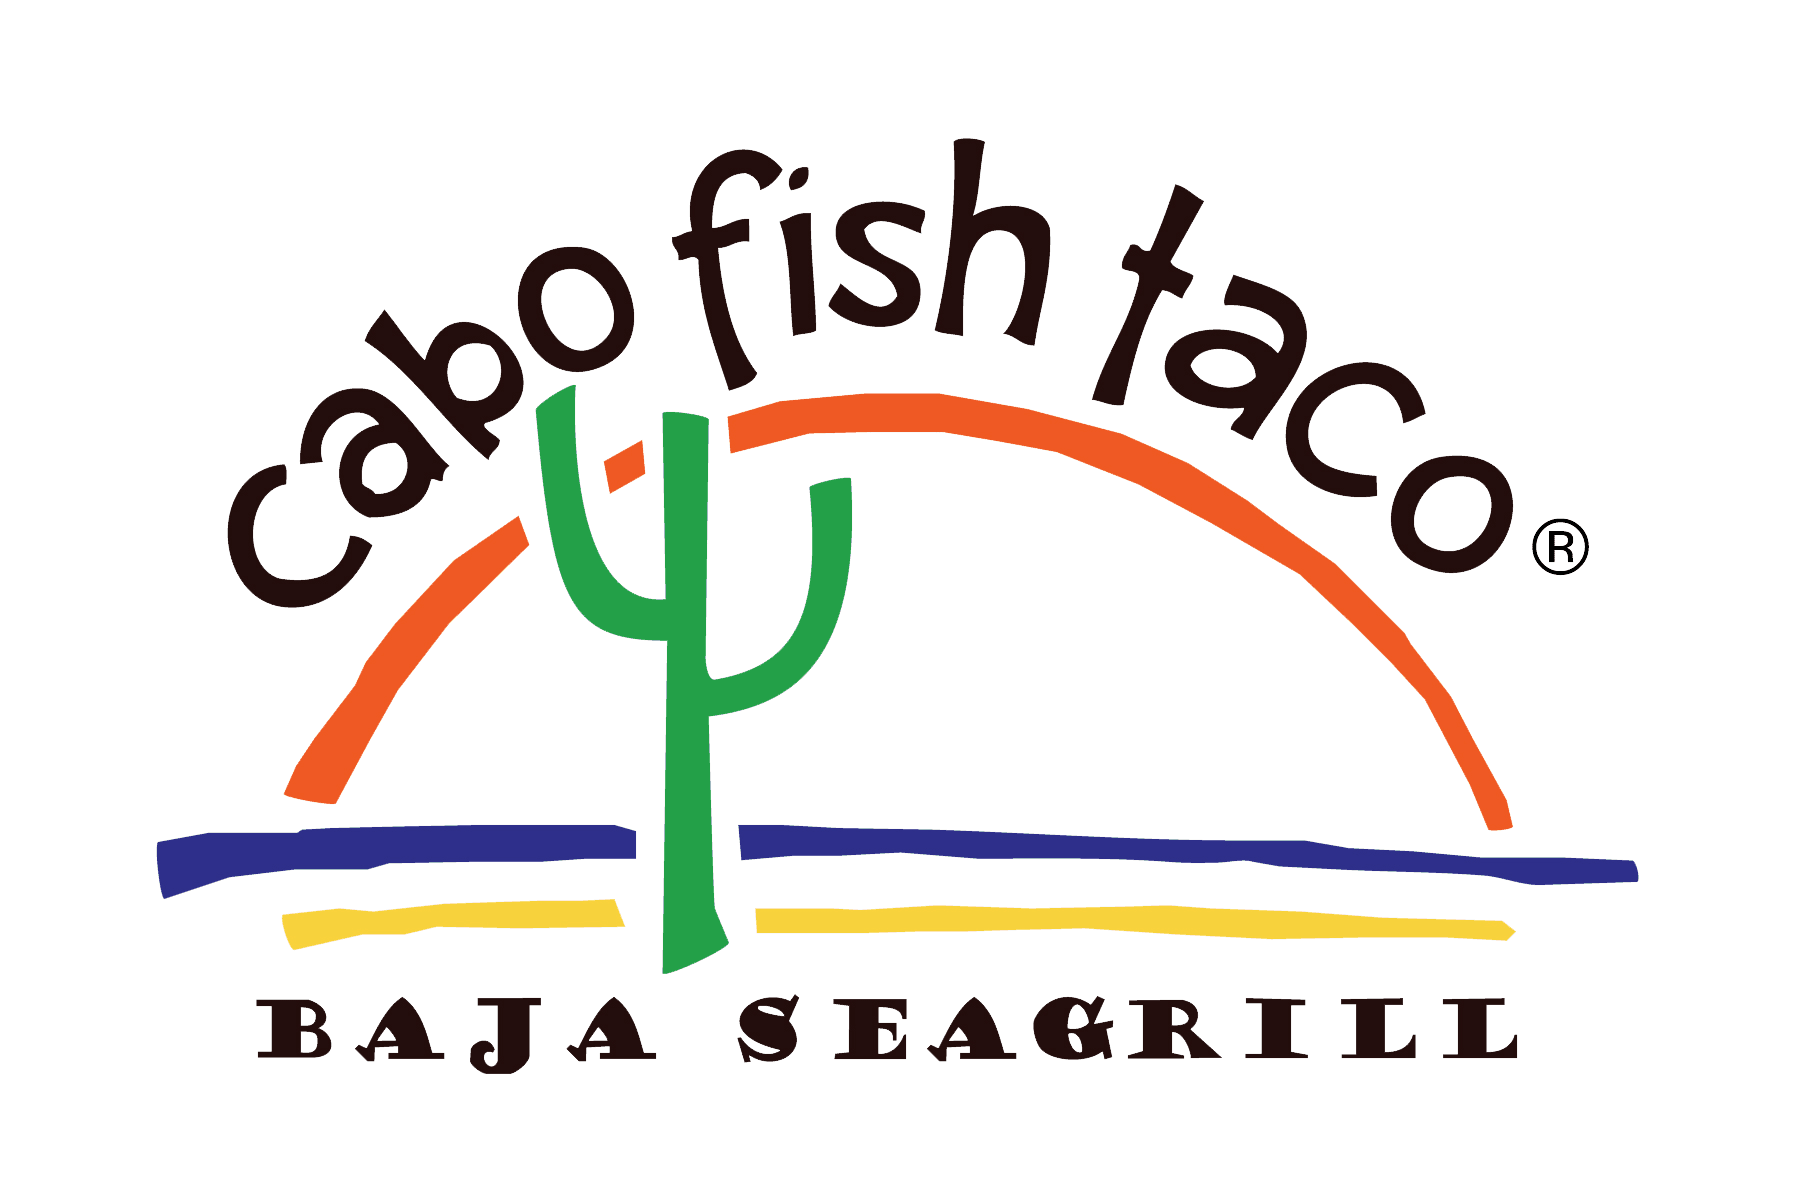 Cabo Fish Taco